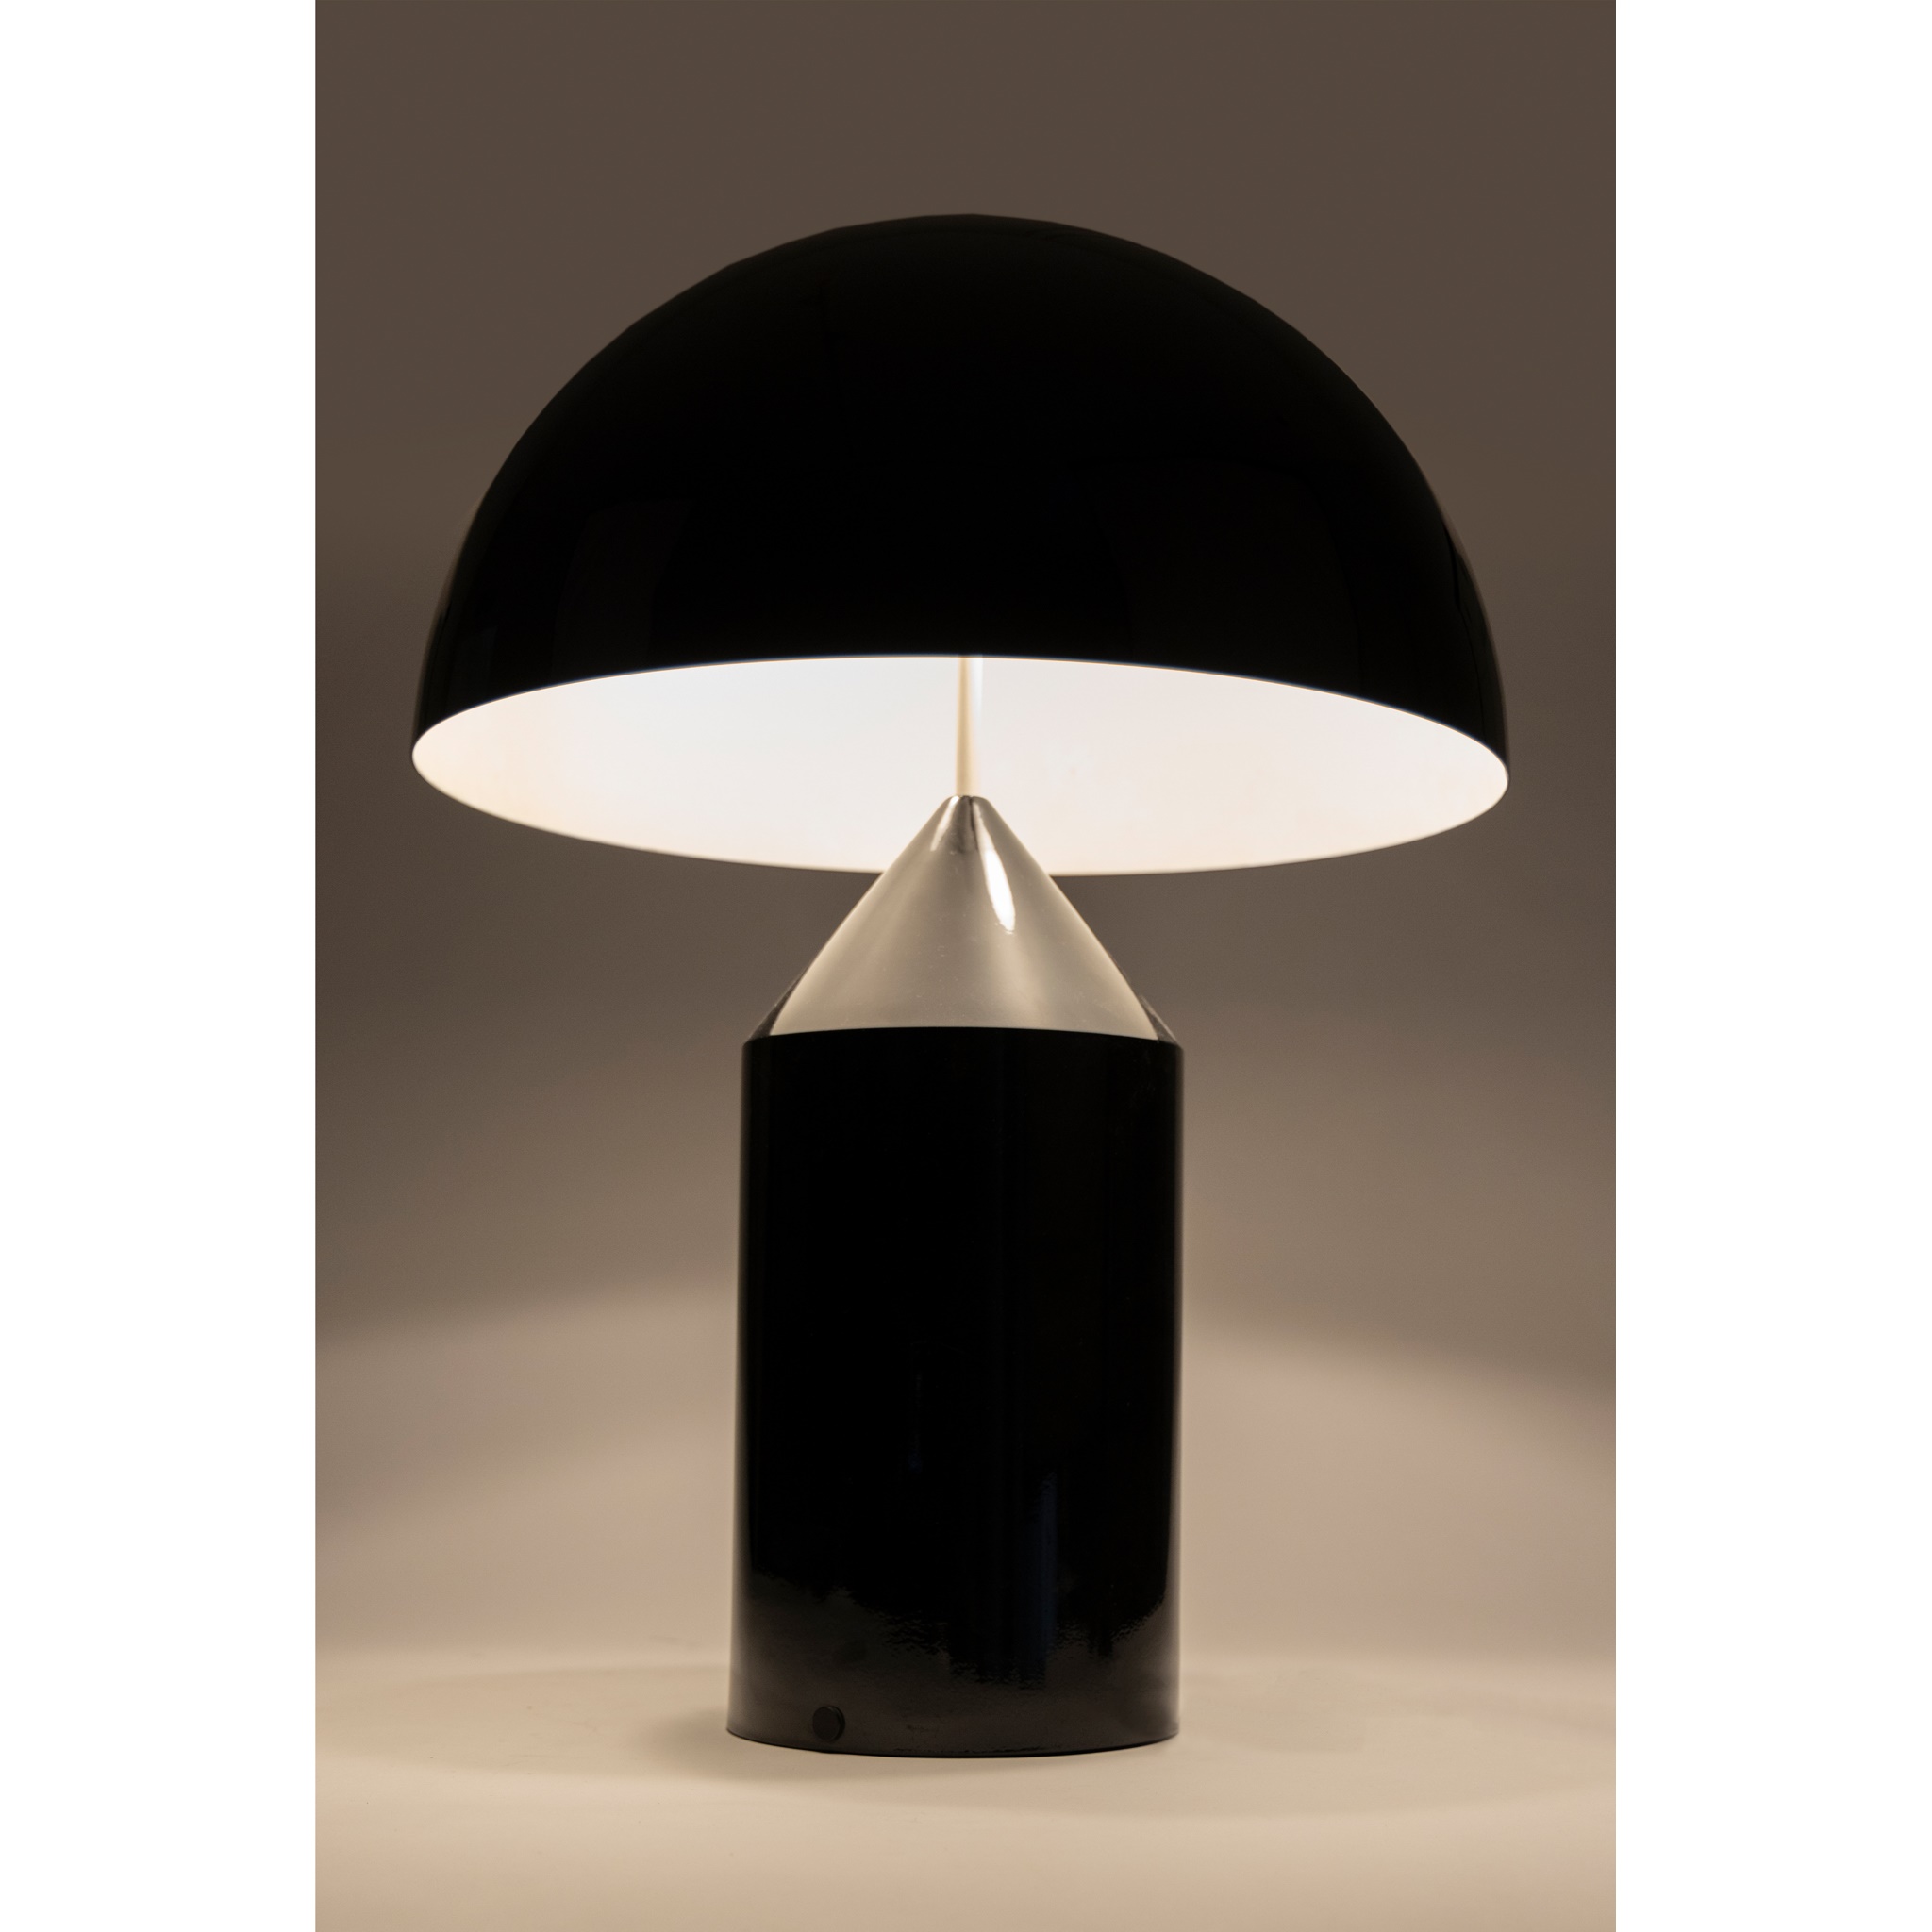 VICO MAGISTRETTI (ITALIAN 1920-2006) FOR OLUCE | ATOLLO TABLE LAMP, DESIGNED 1977 | £600 - £800 + fees